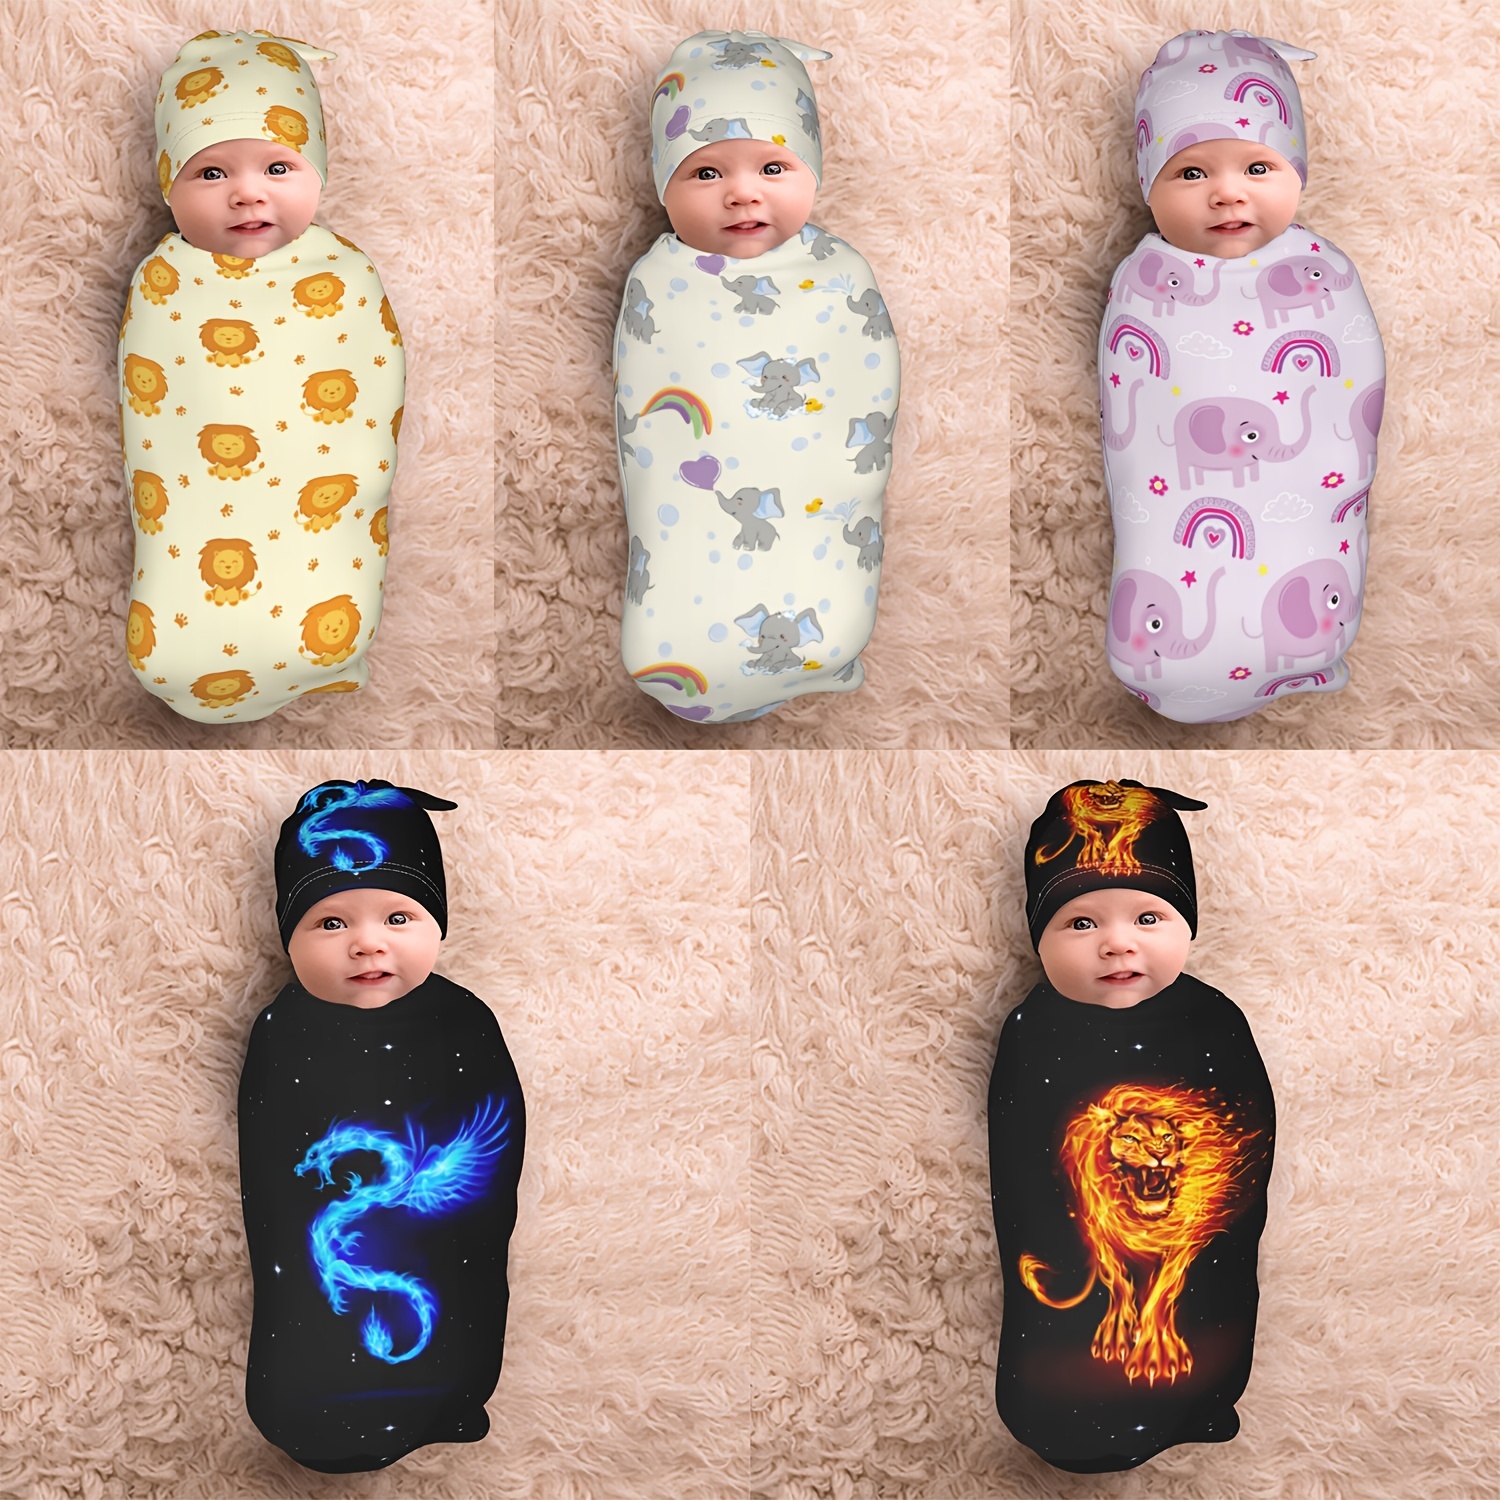 Mantas para bebés - El Recien NacidoEl Recien Nacido